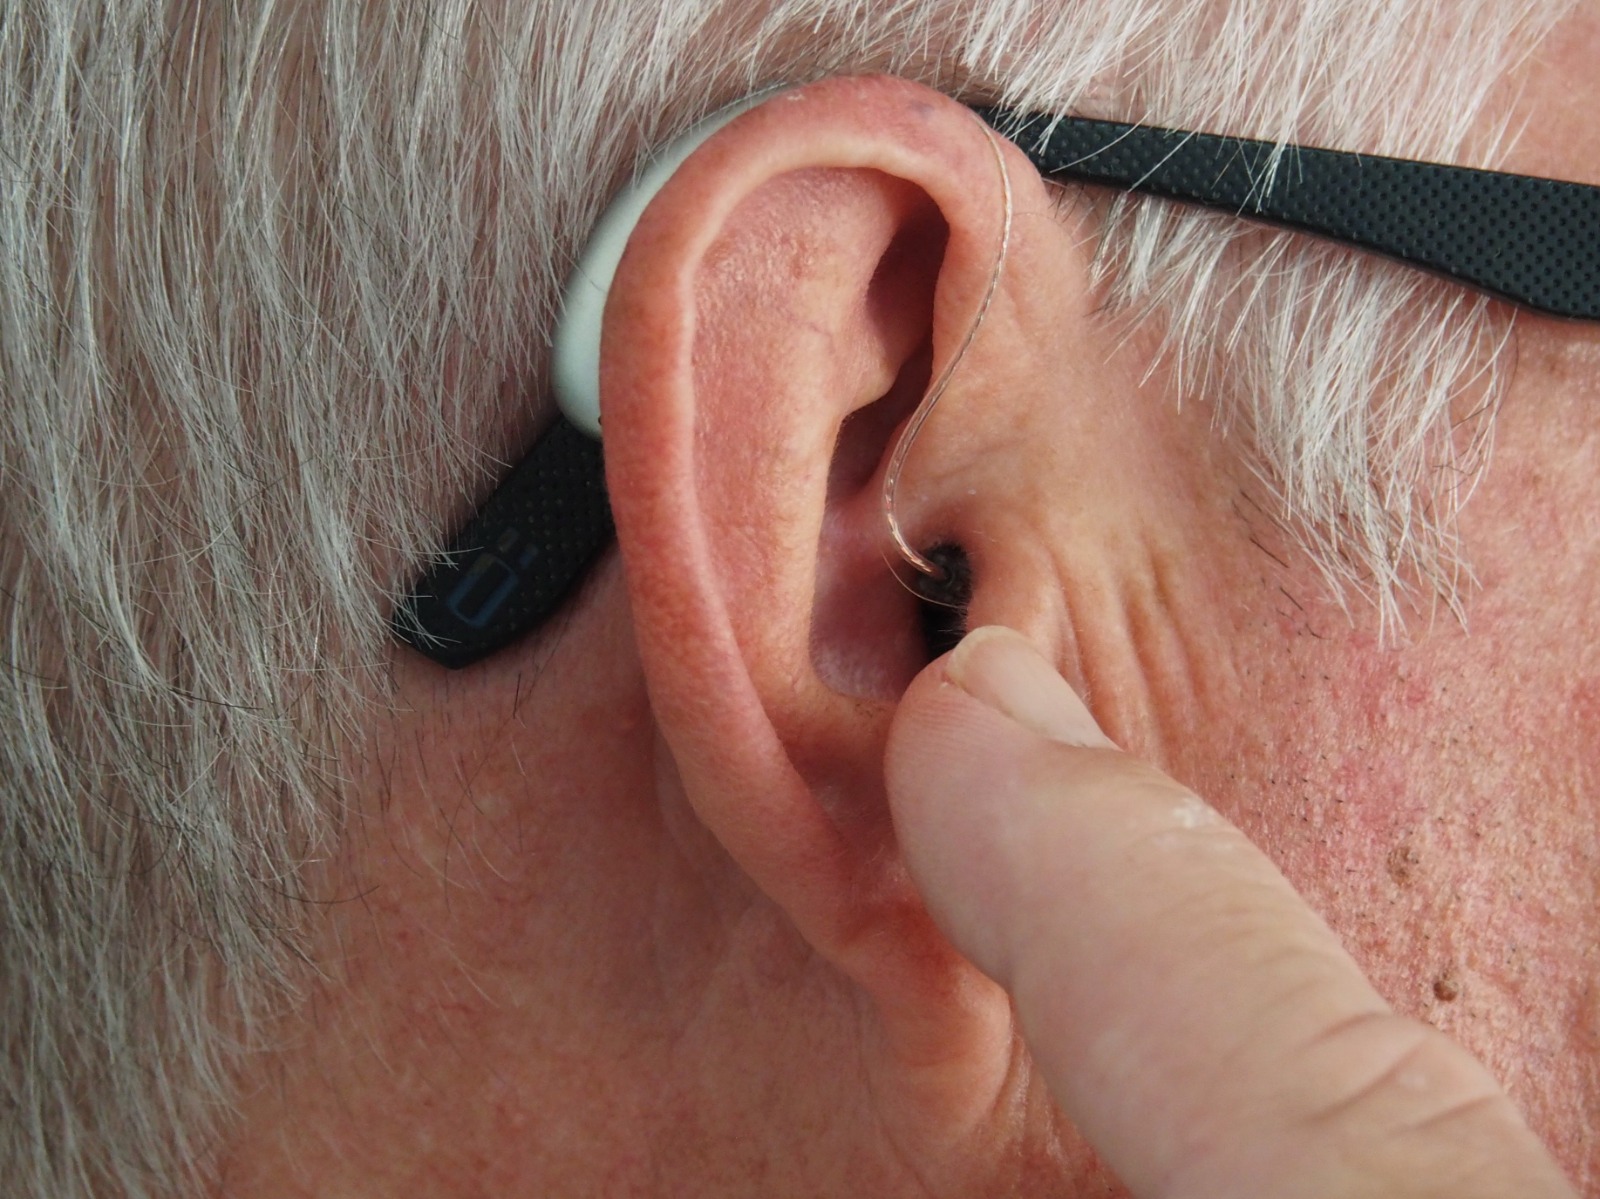 Choisir le bon appareil auditif : le guide complet